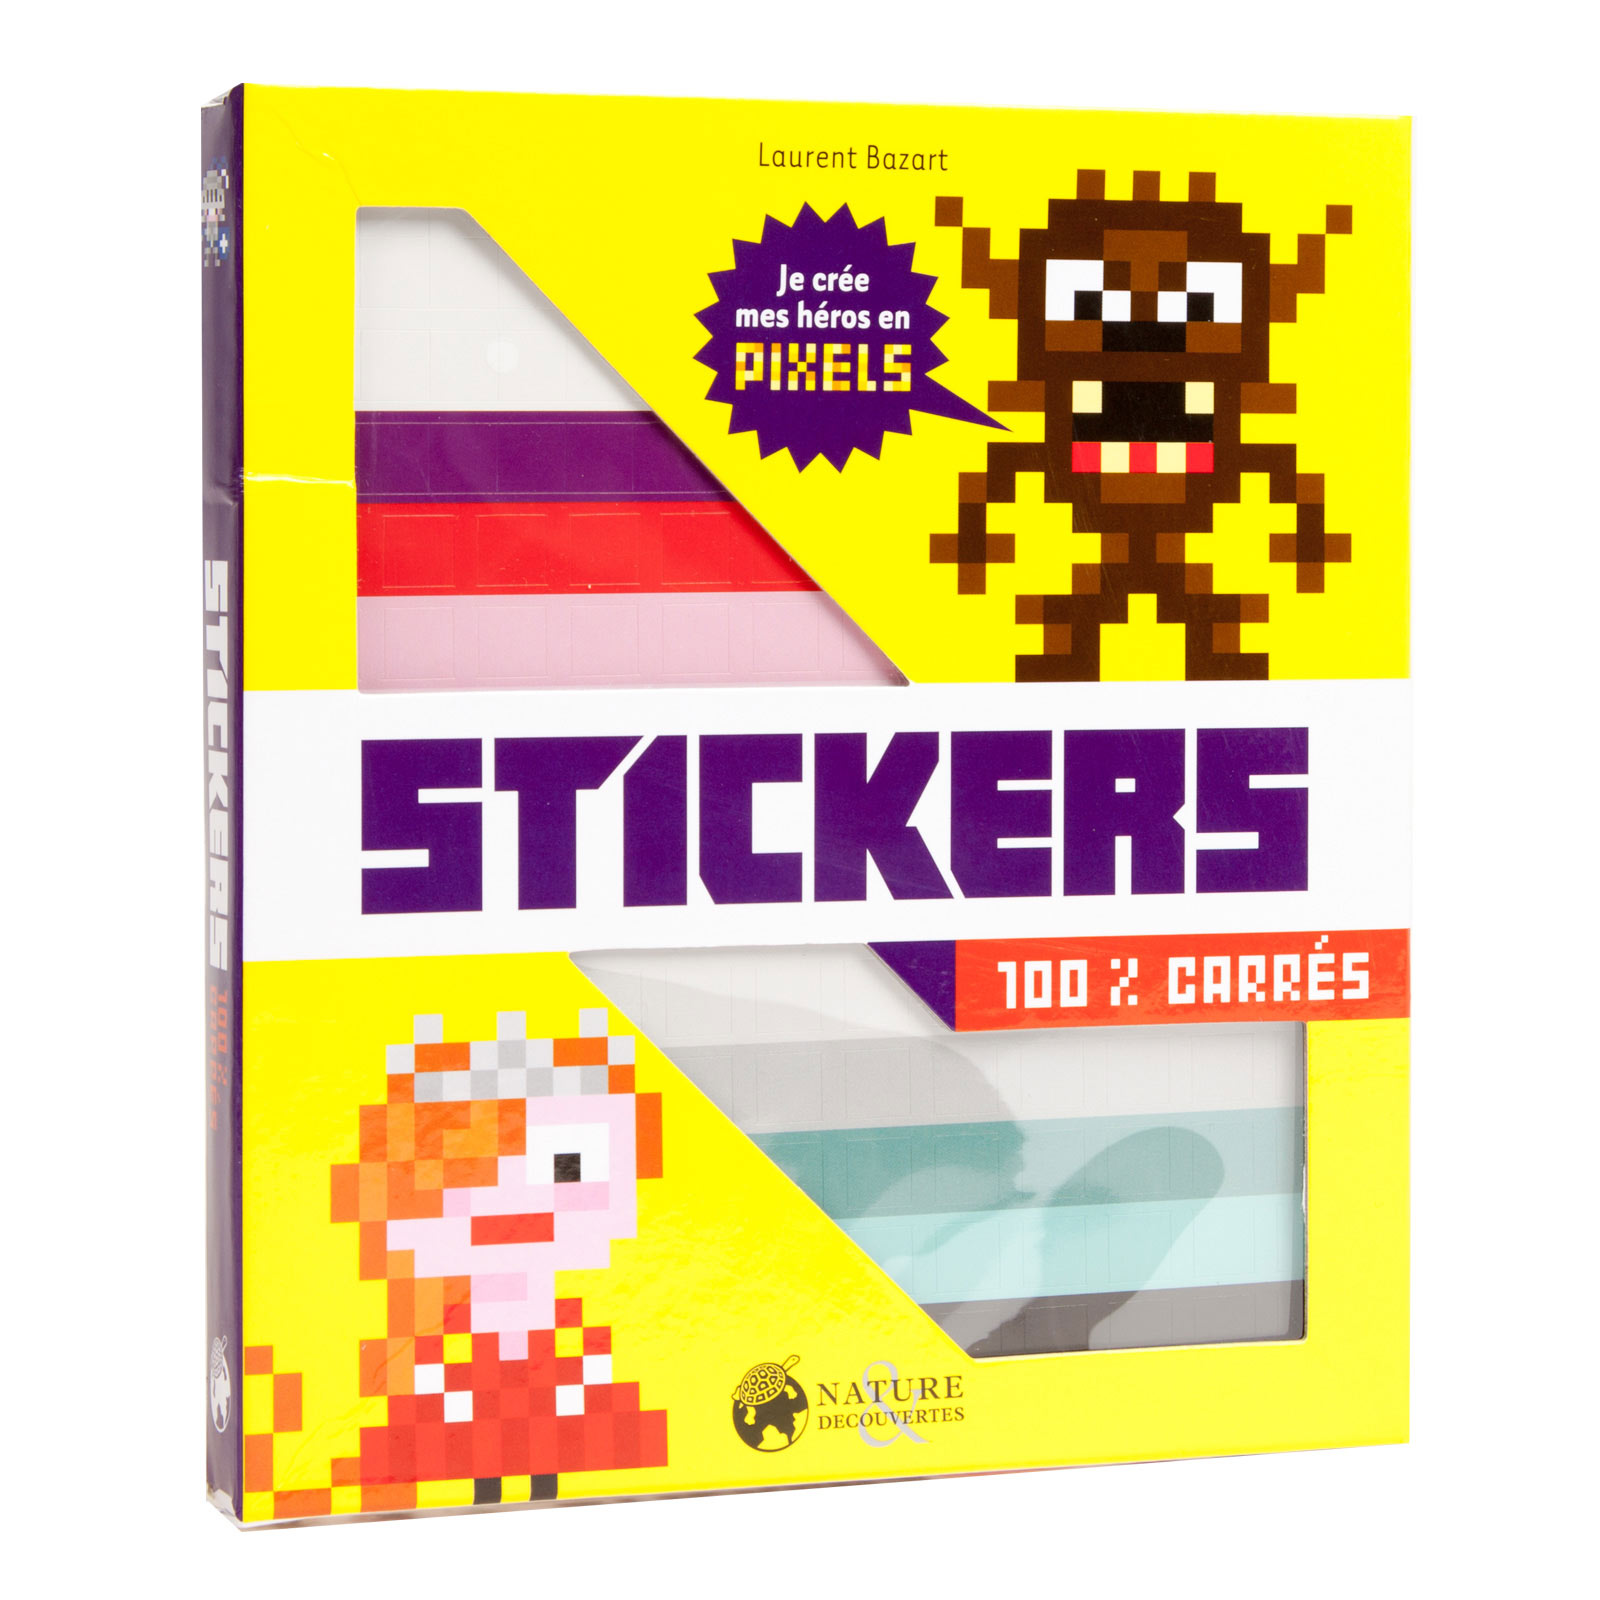 Stickers 100% carrés héros